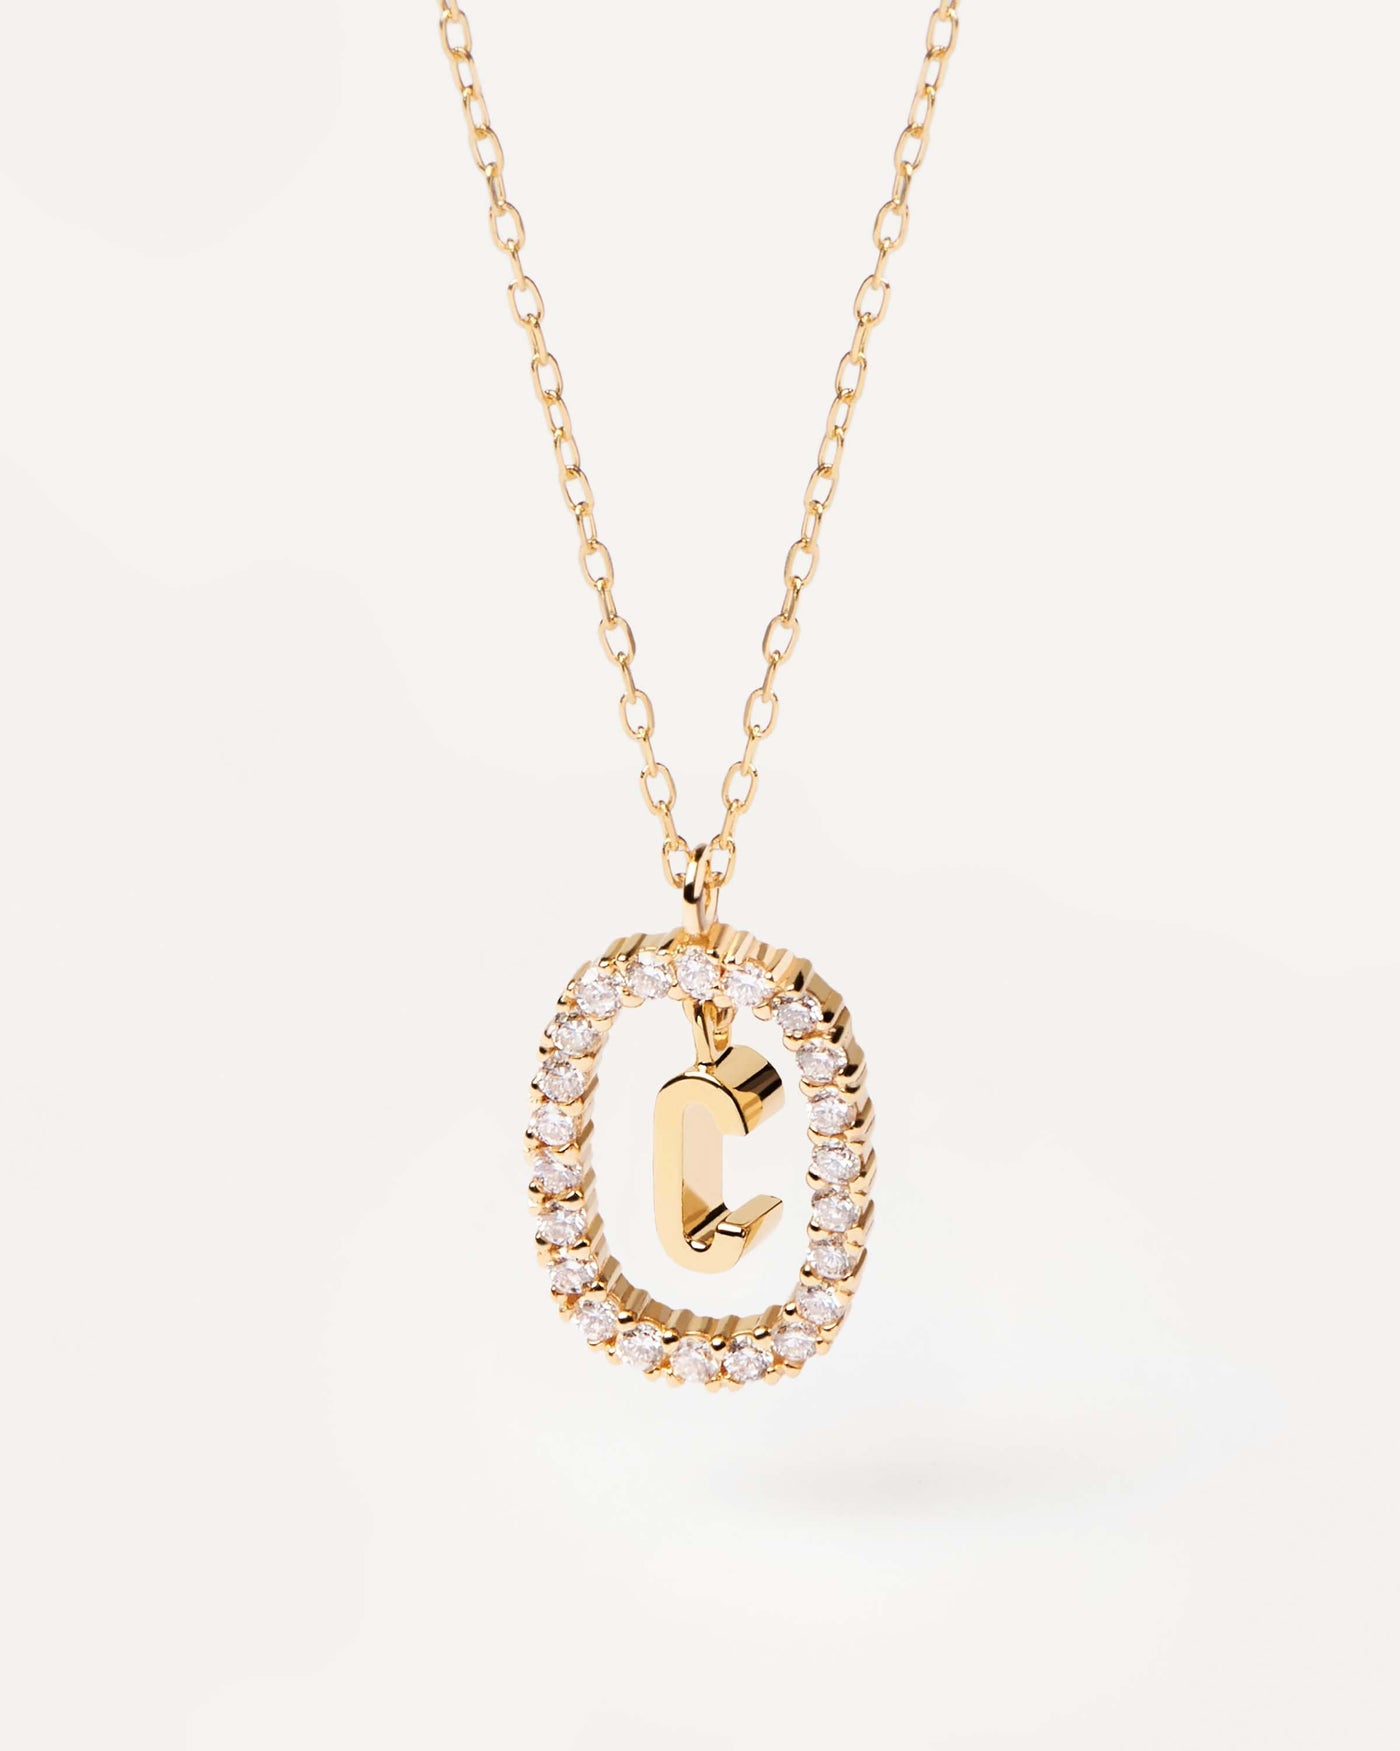 GoldHalskette mit Diamanten Buchstabe C. Erstes C-Halskette in soliden Gelbgold, umkreist von 0,33 Karat-Labor-Diamanten. Erhalten Sie die neuesten Produkte von PDPAOLA. Geben Sie Ihre Bestellung sicher auf und erhalten Sie diesen Bestseller.